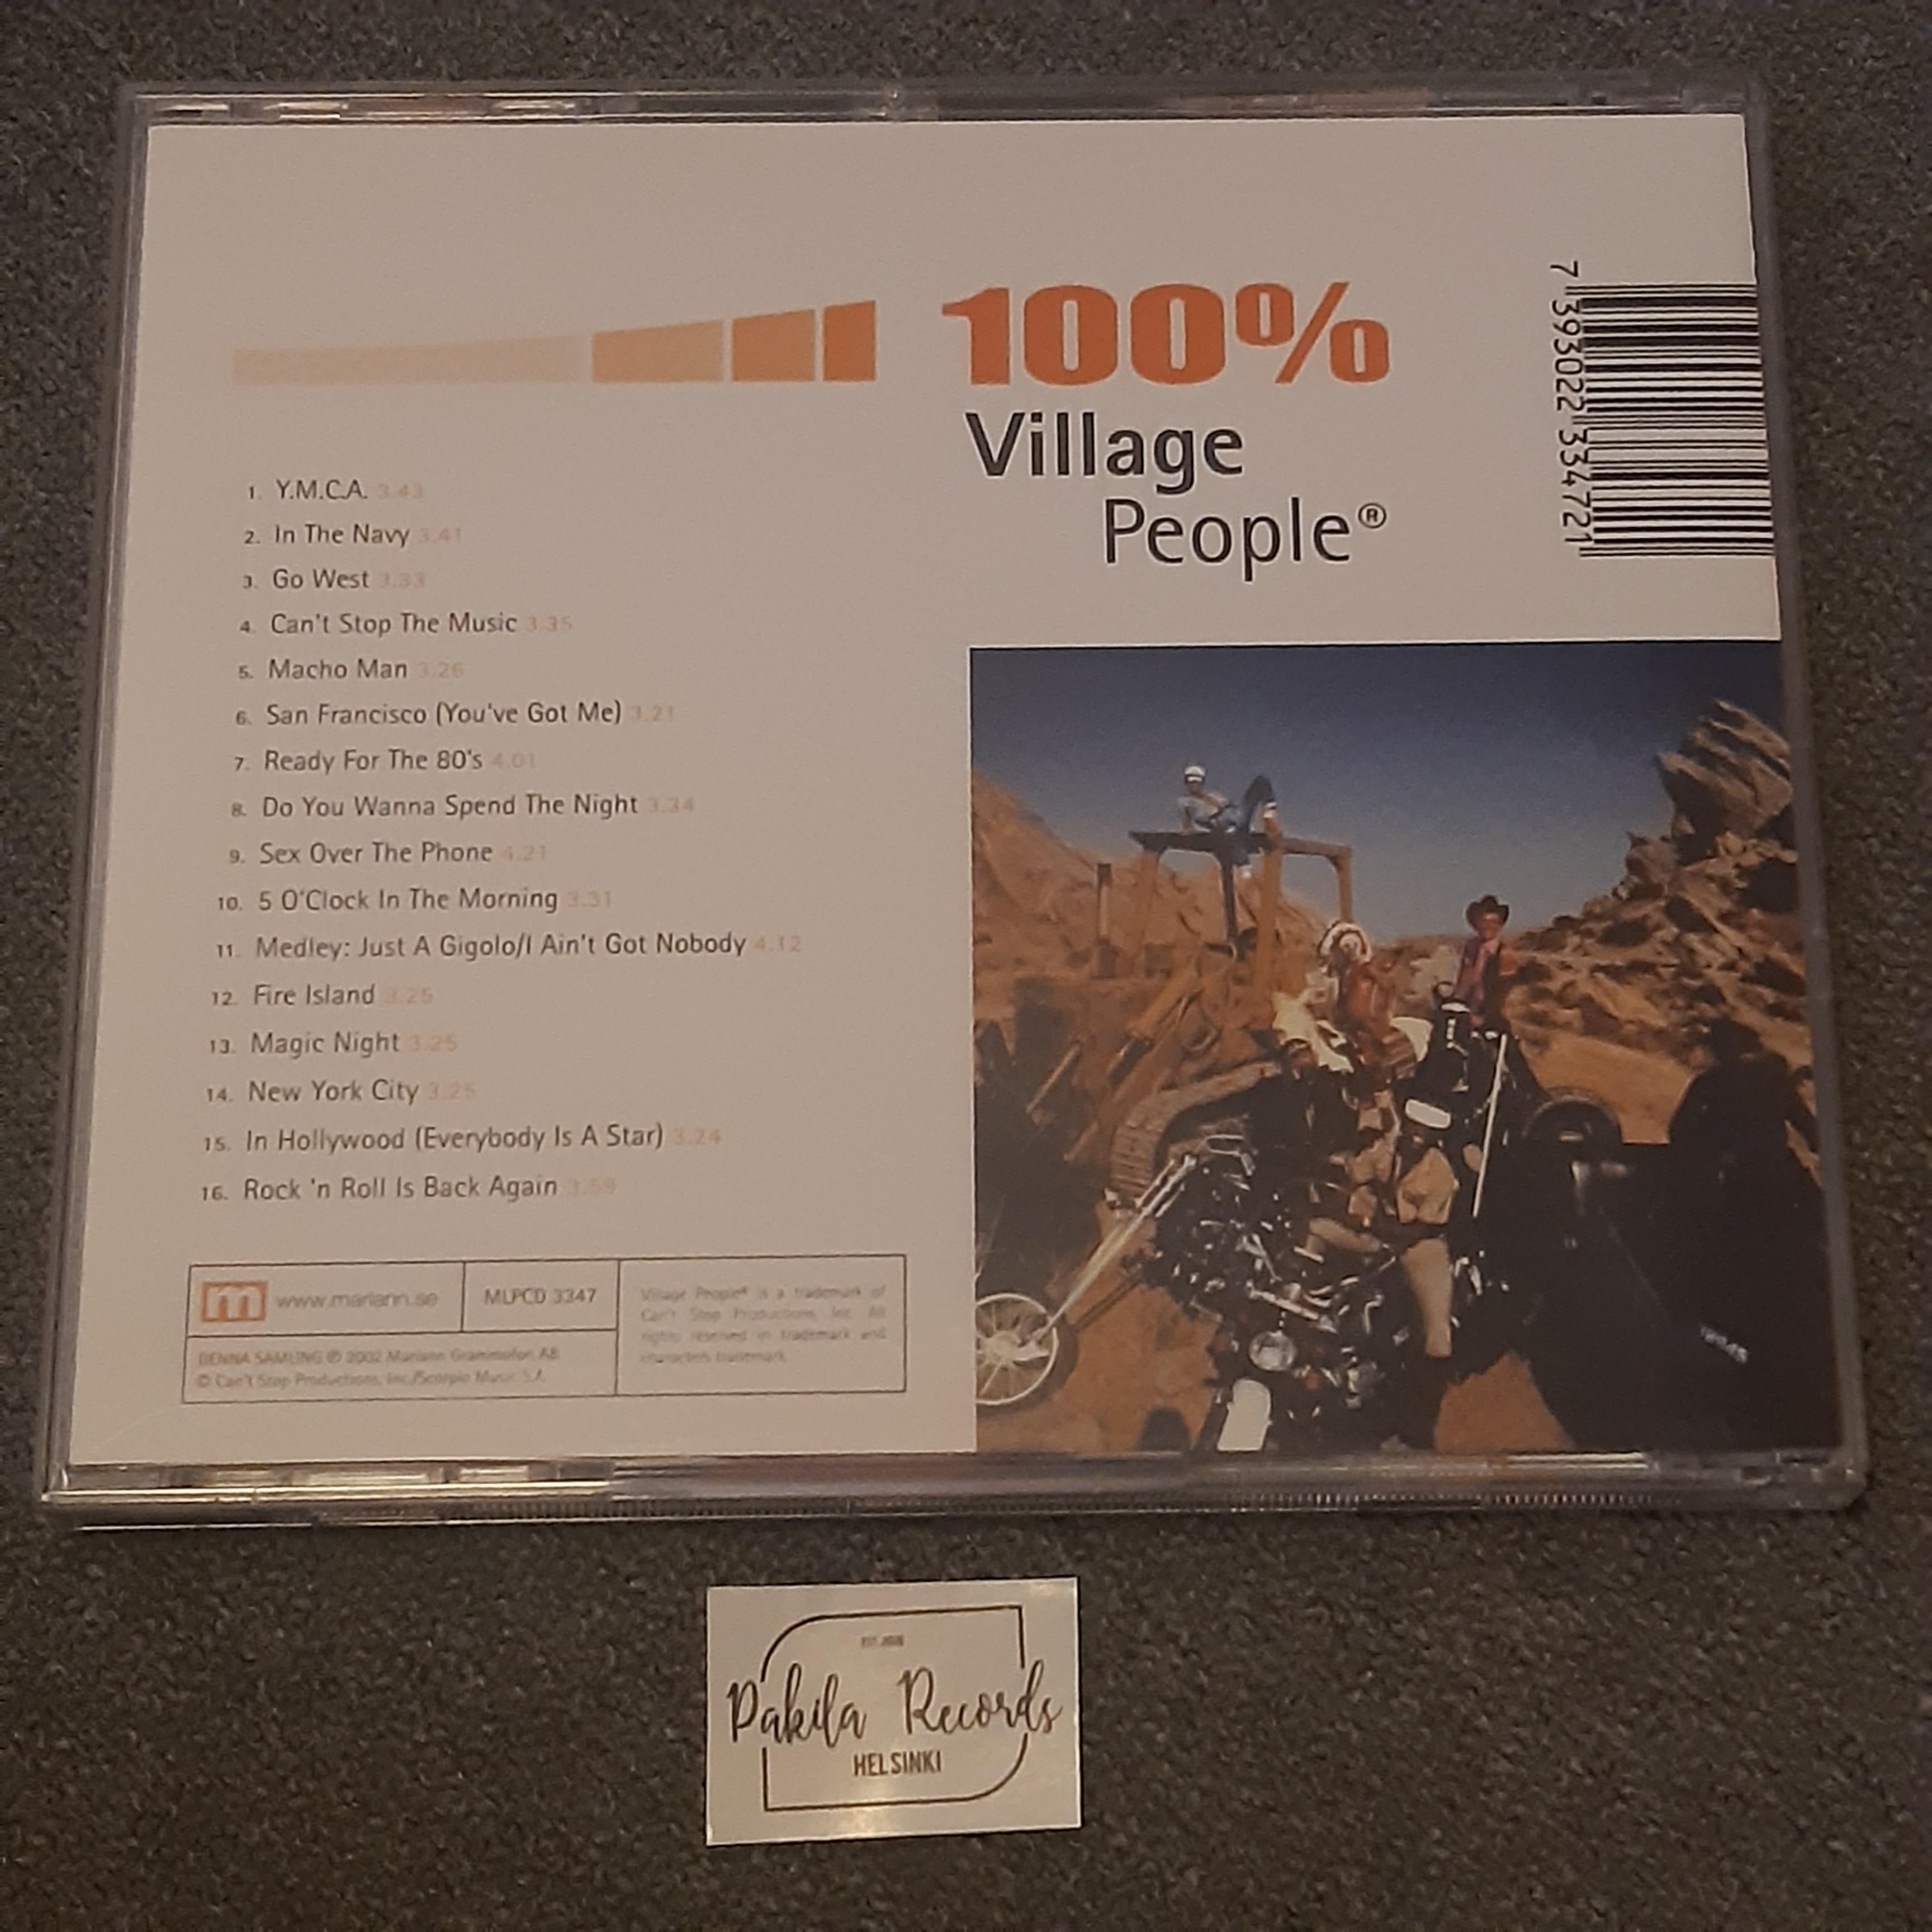 Village People - 100% - CD (käytetty)